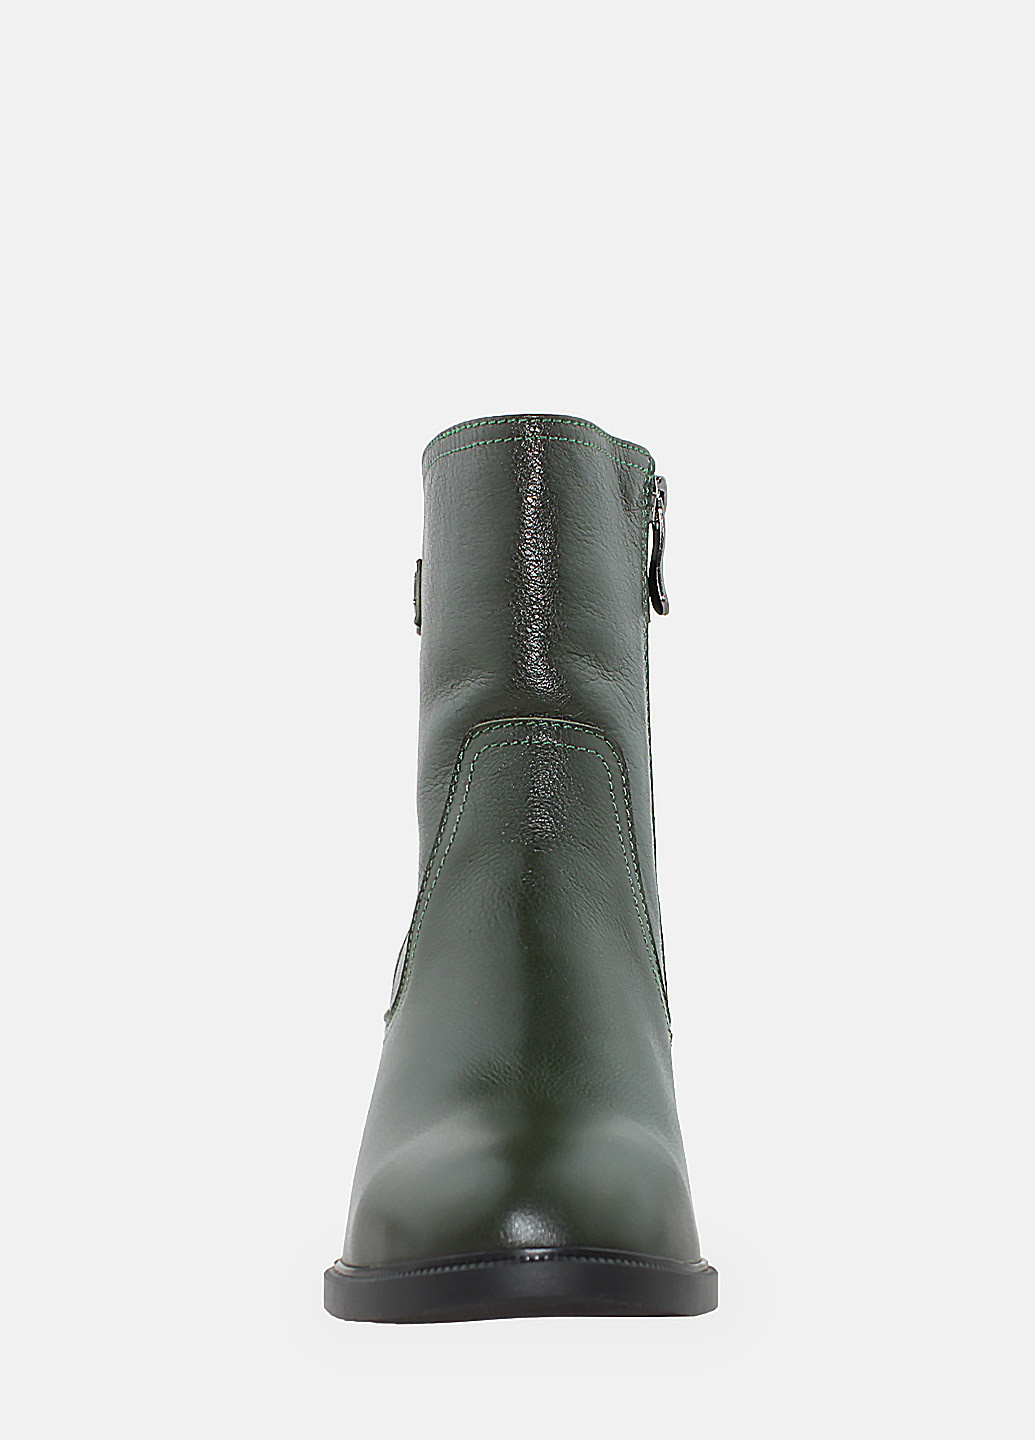 Зимние ботинки raмолли1-86 зеленый Alamo